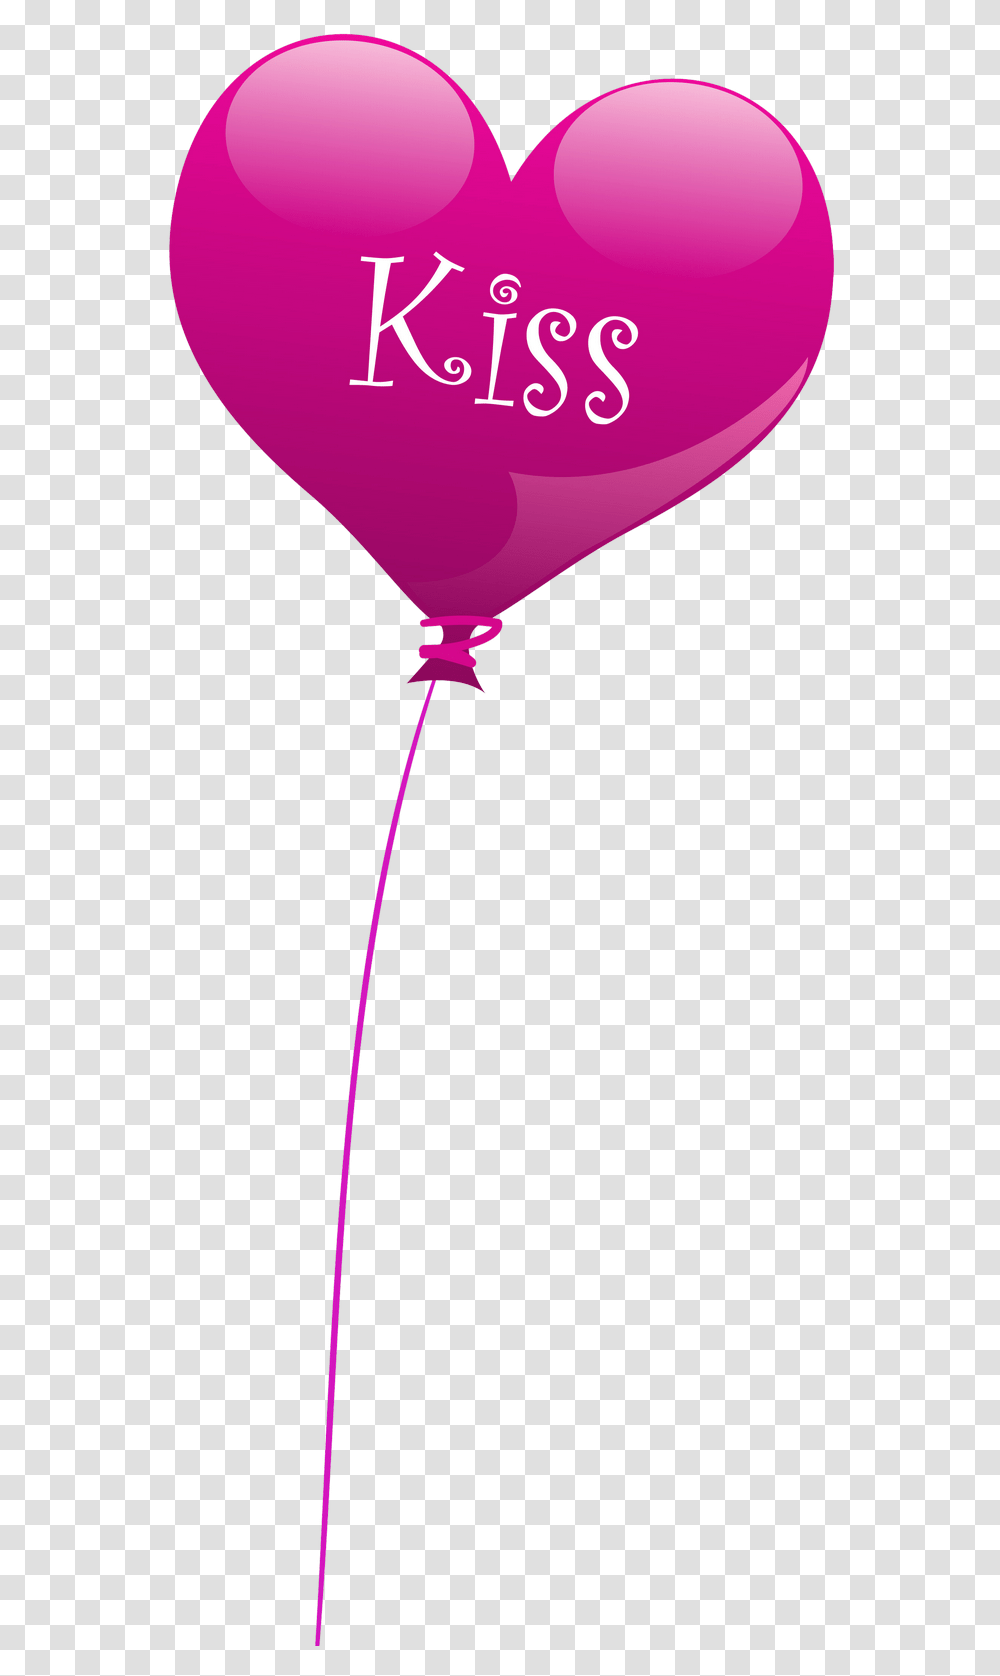 Heart Kiss Balloon Clipart Balloons Clip Clip Art Transparent Png